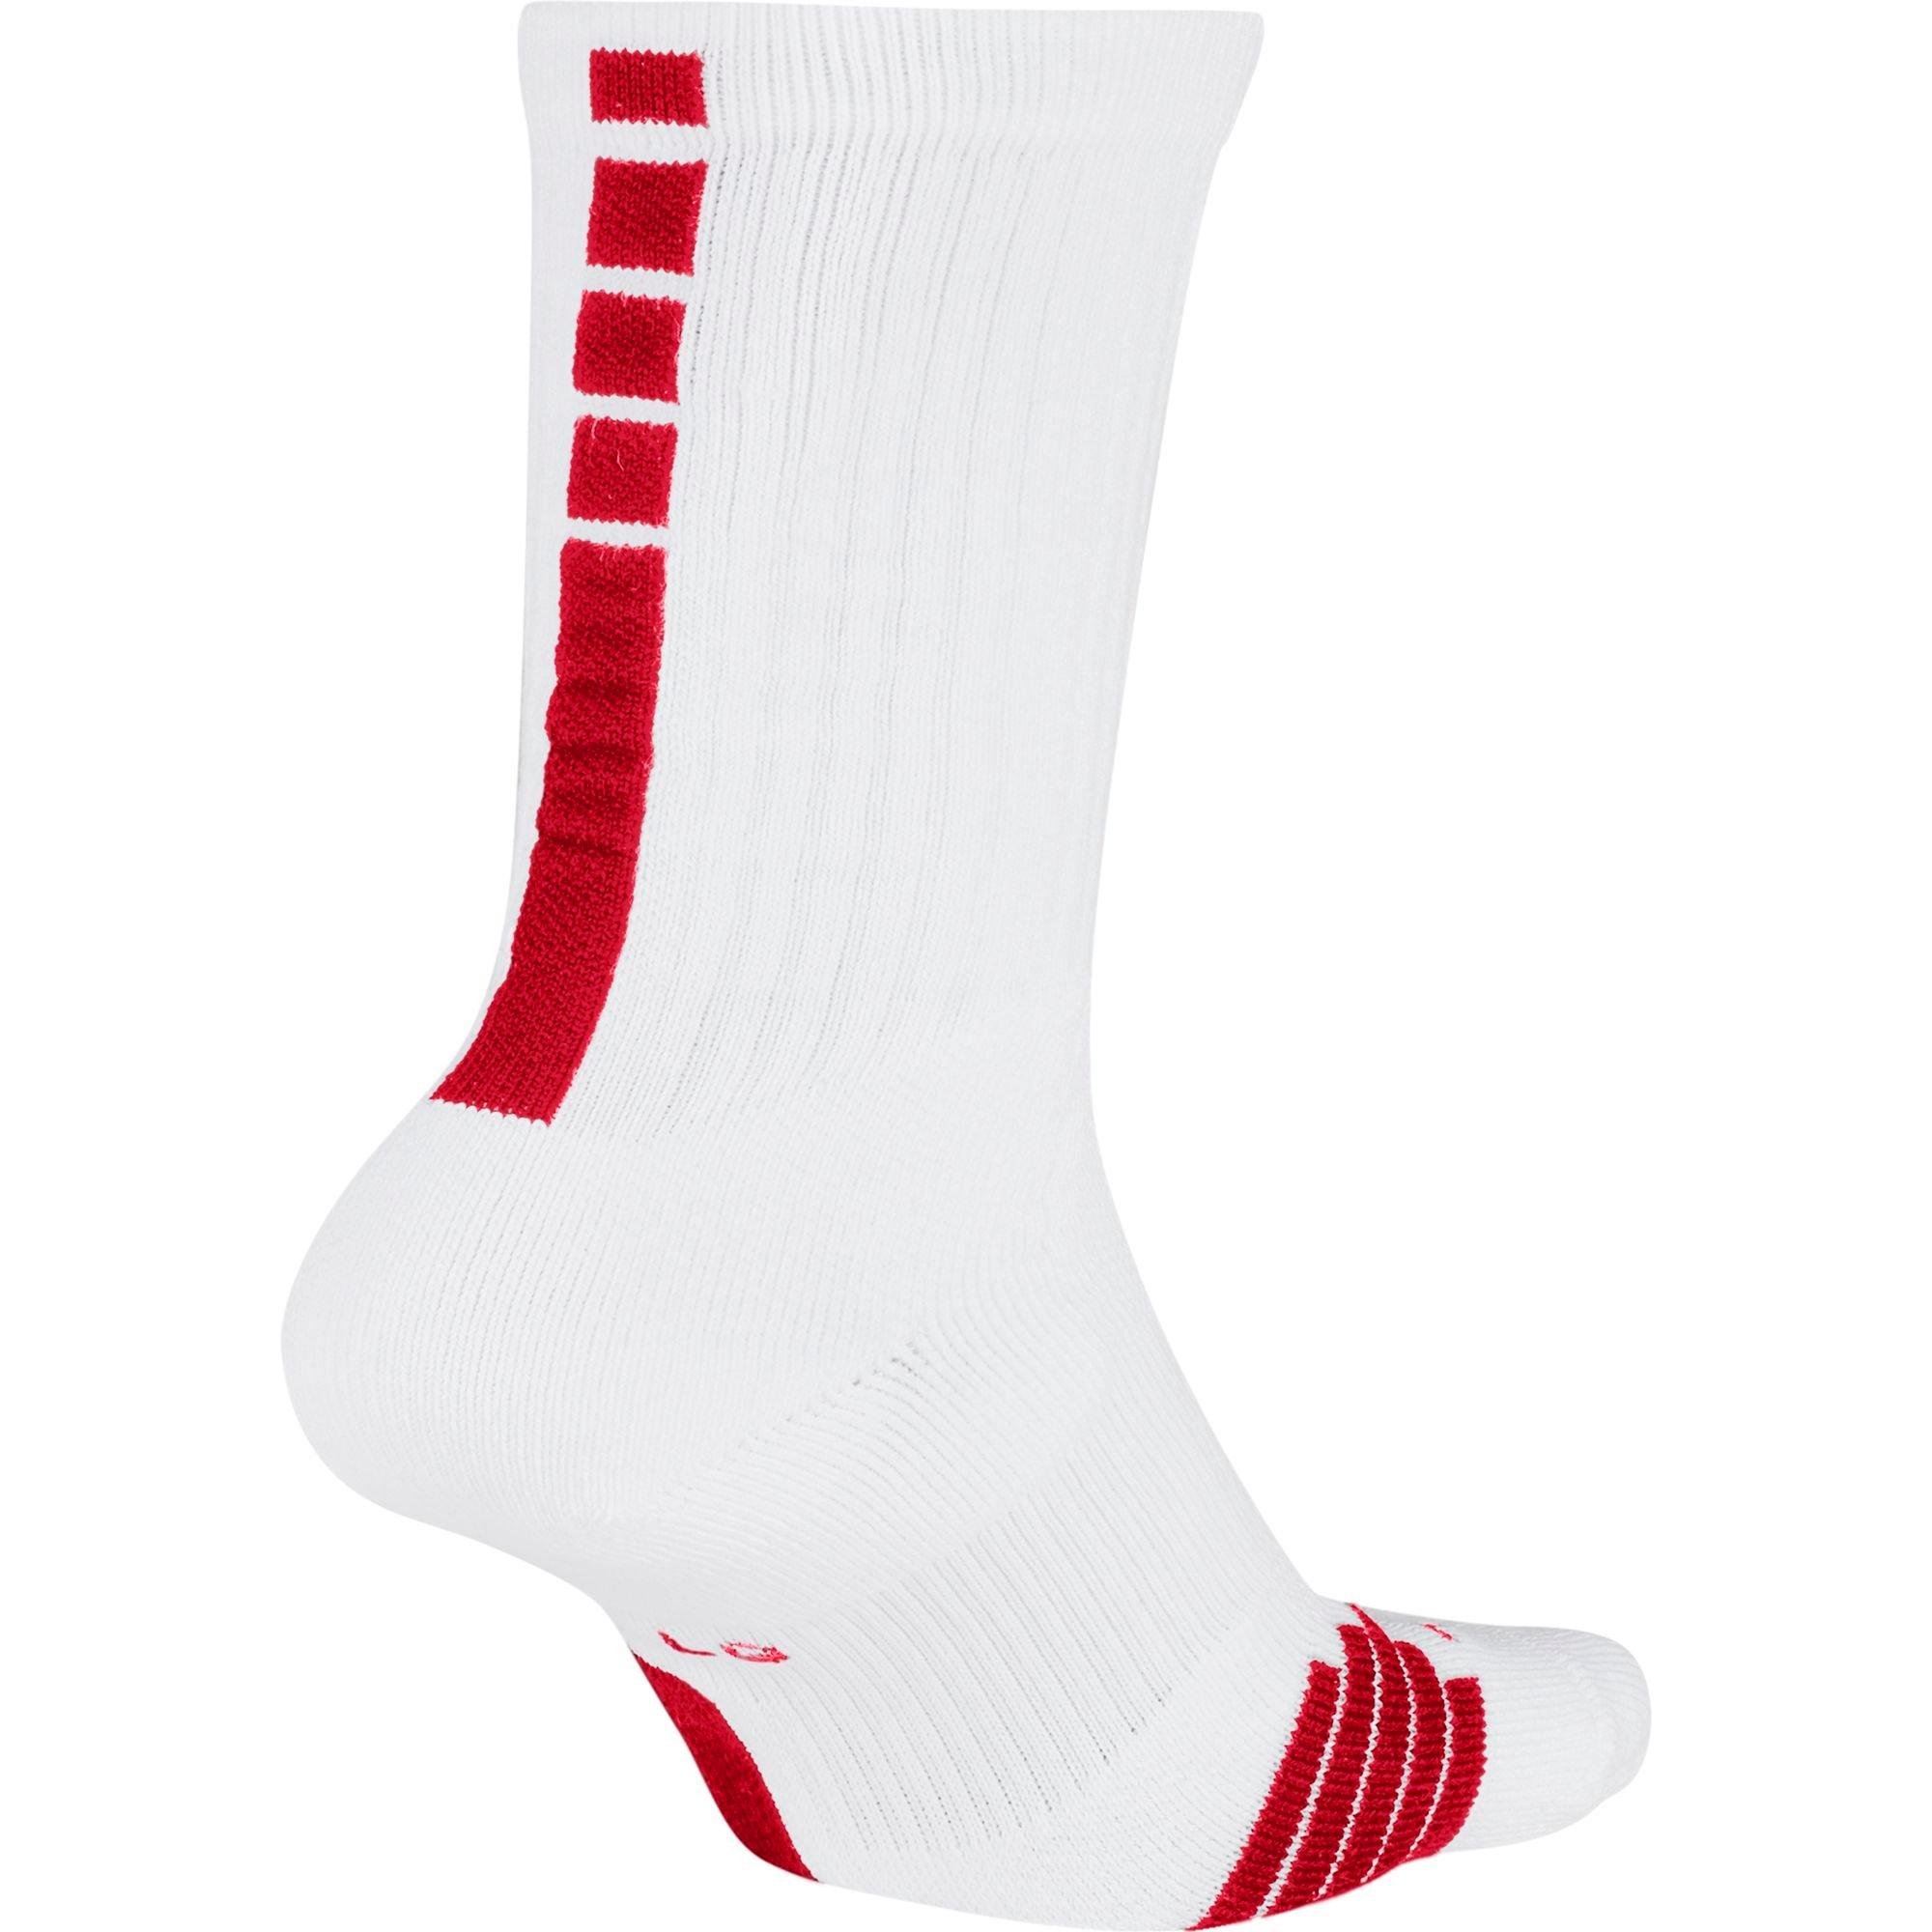 Nike Elite Unisex Crew Basketball Socks - White/Red